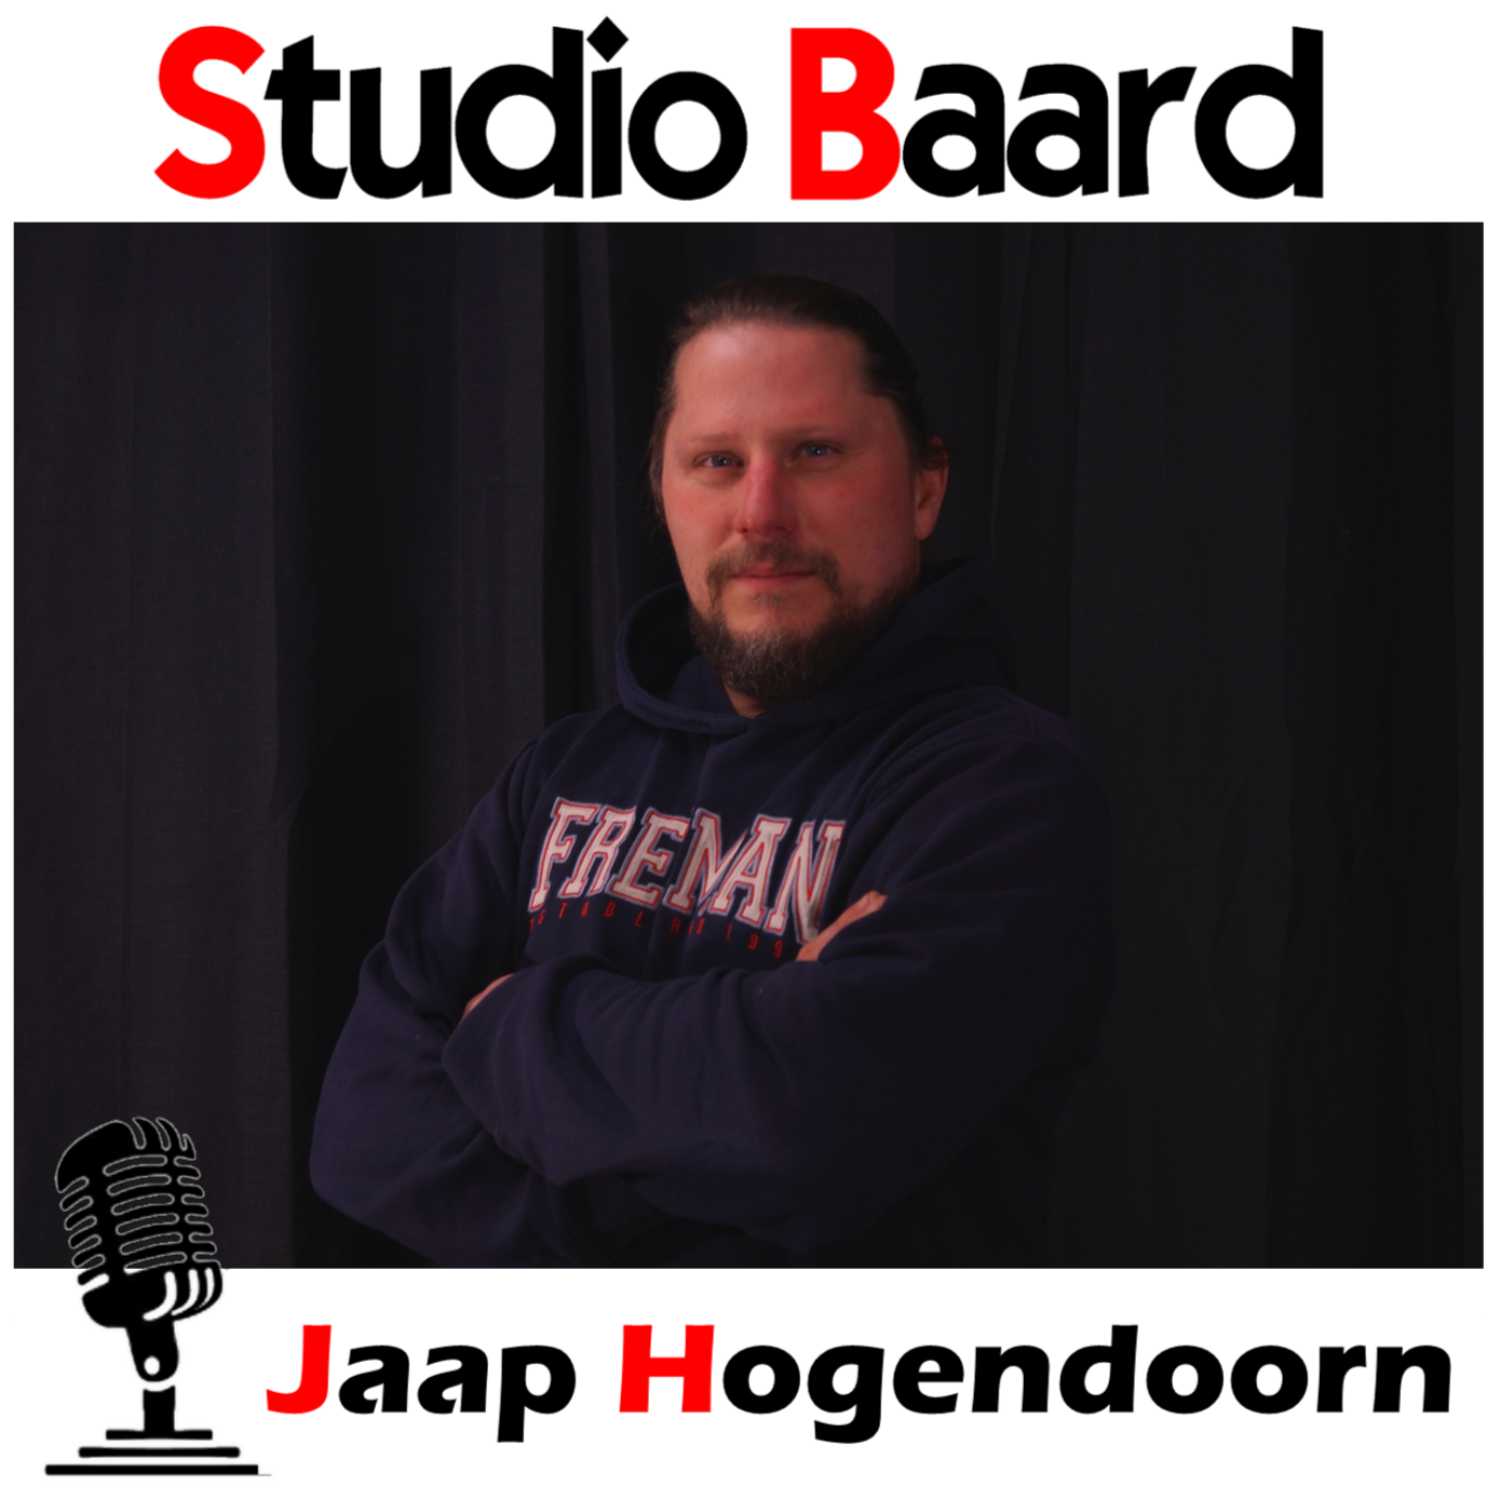 Studio Baard met Jaap Hogendoorn (deel 2)